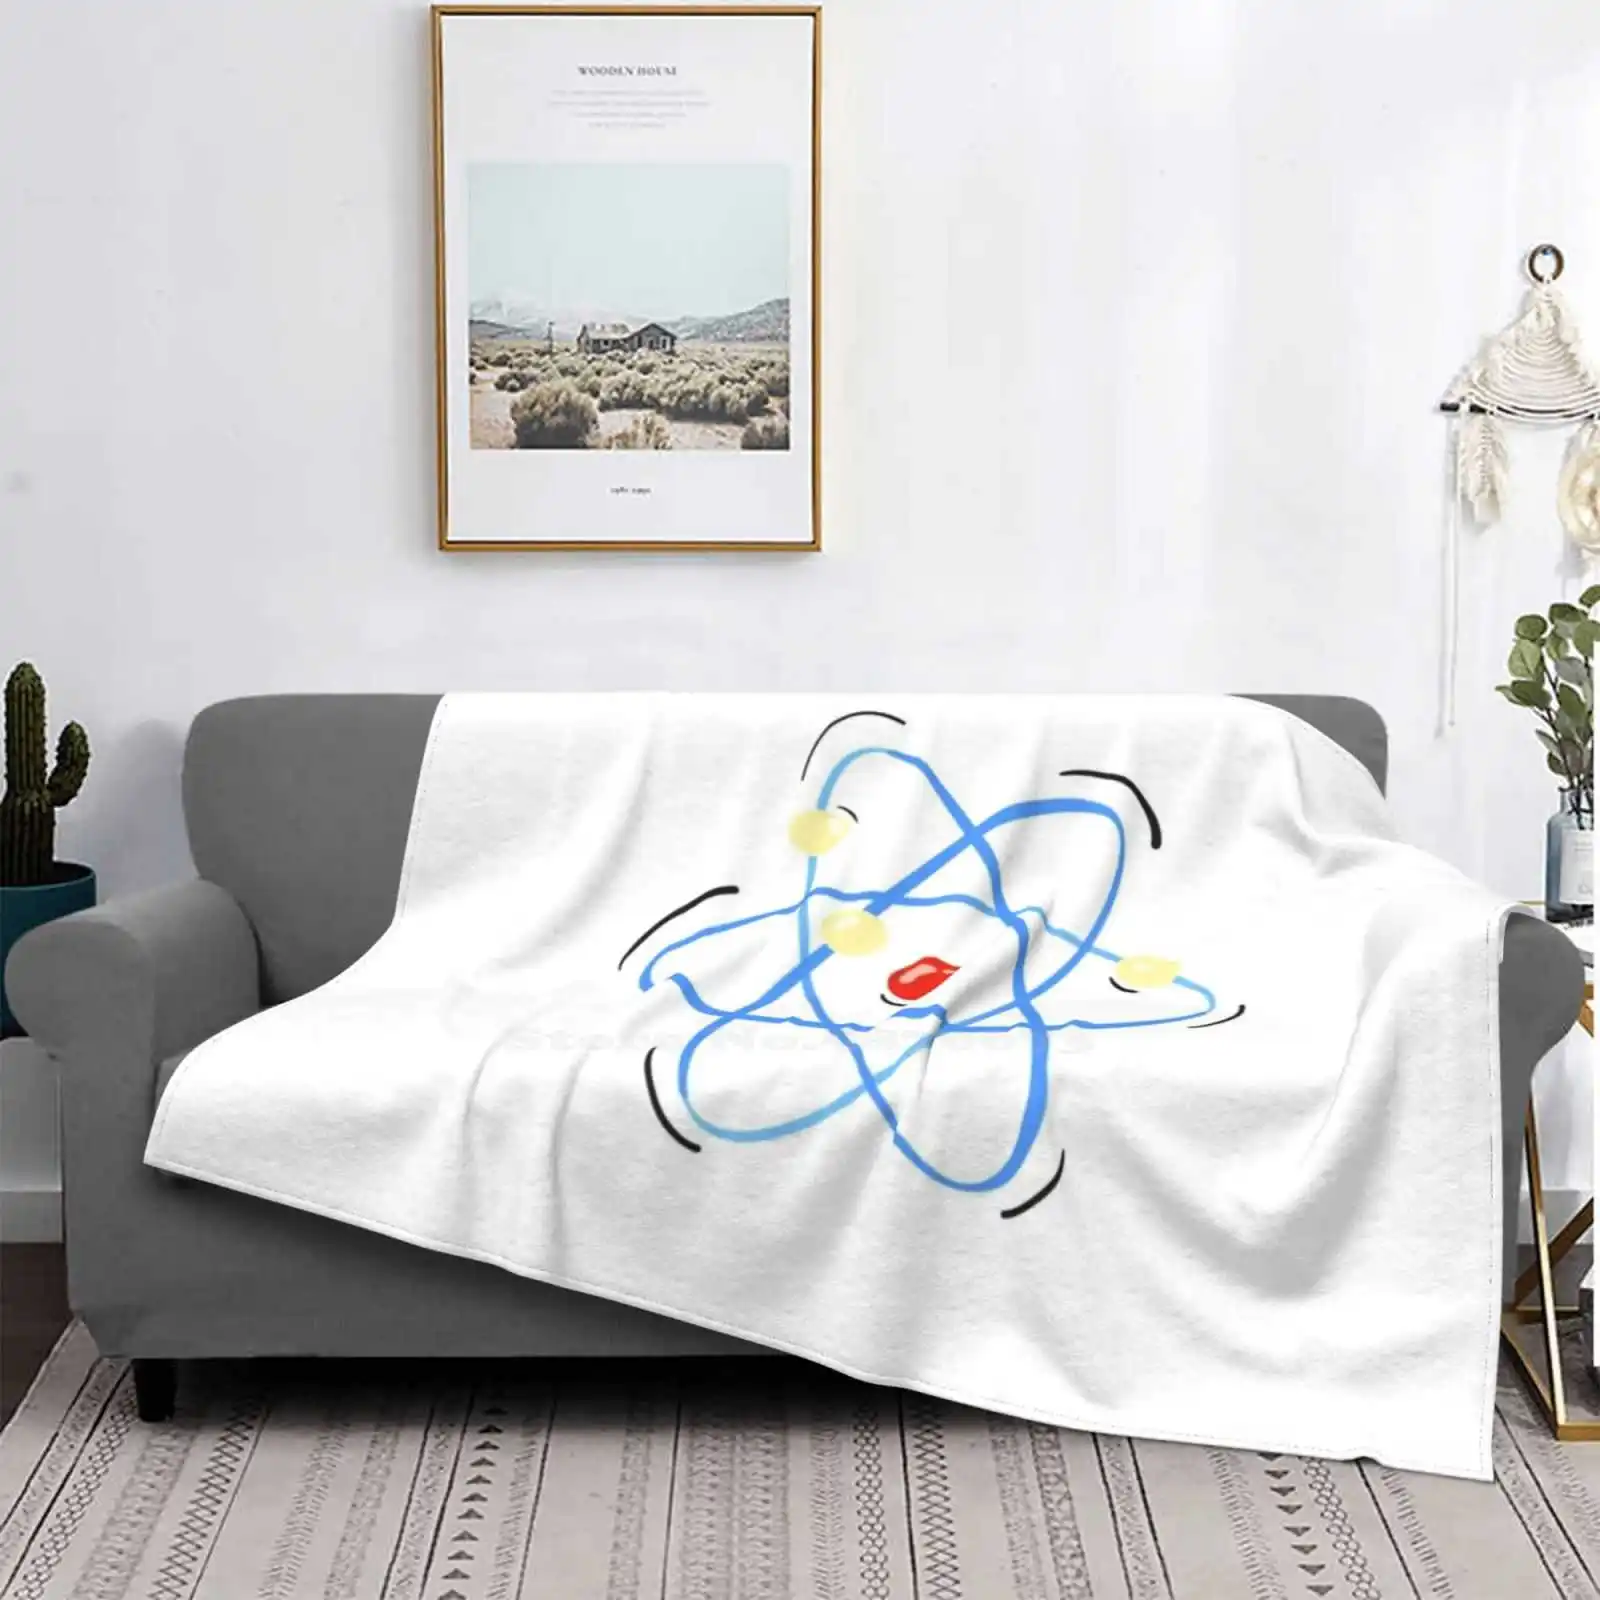 

Удобный Диван для кровати Atom Science Design, мягкое одеяло, забавная биология, техника, химия, физика, ботаник